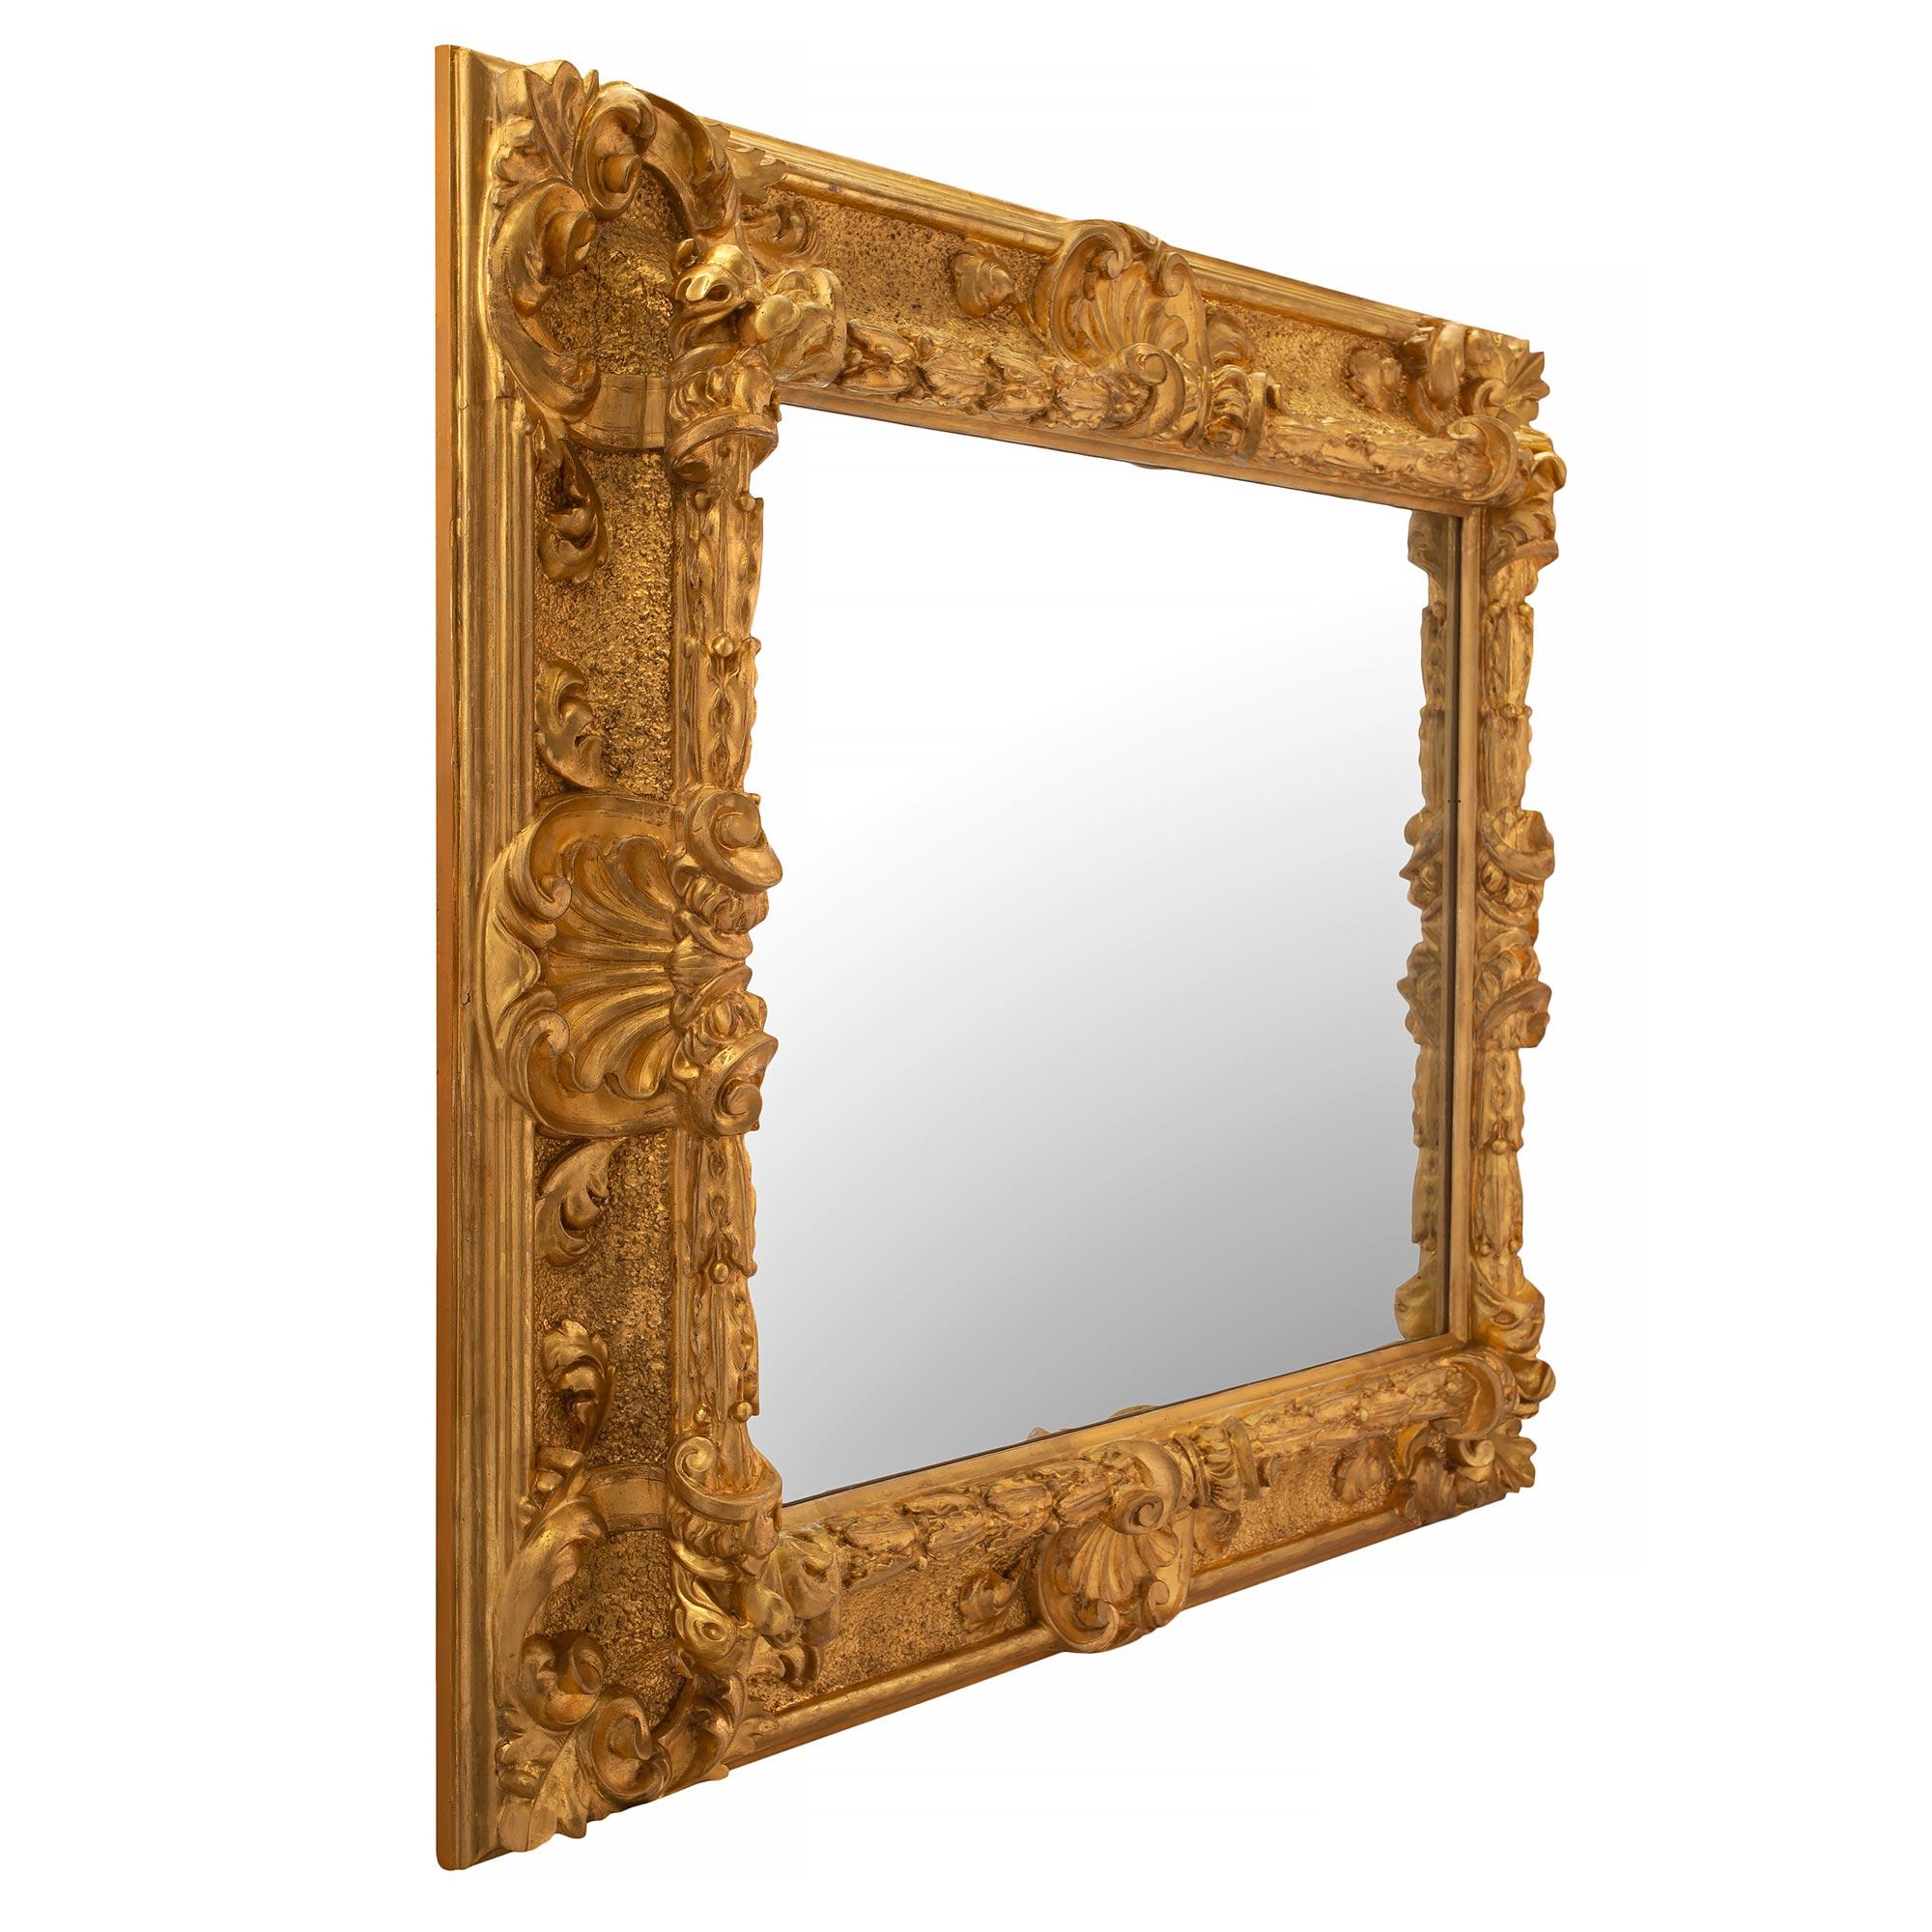 Superbe miroir italien en bois doré florentin du XVIIIe siècle. La plaque de miroir est encadrée d'une belle bordure en bois doré avec une fine bande de lauriers et un motif moucheté. À chaque angle, de fins mouvements feuillagés en volutes centrent